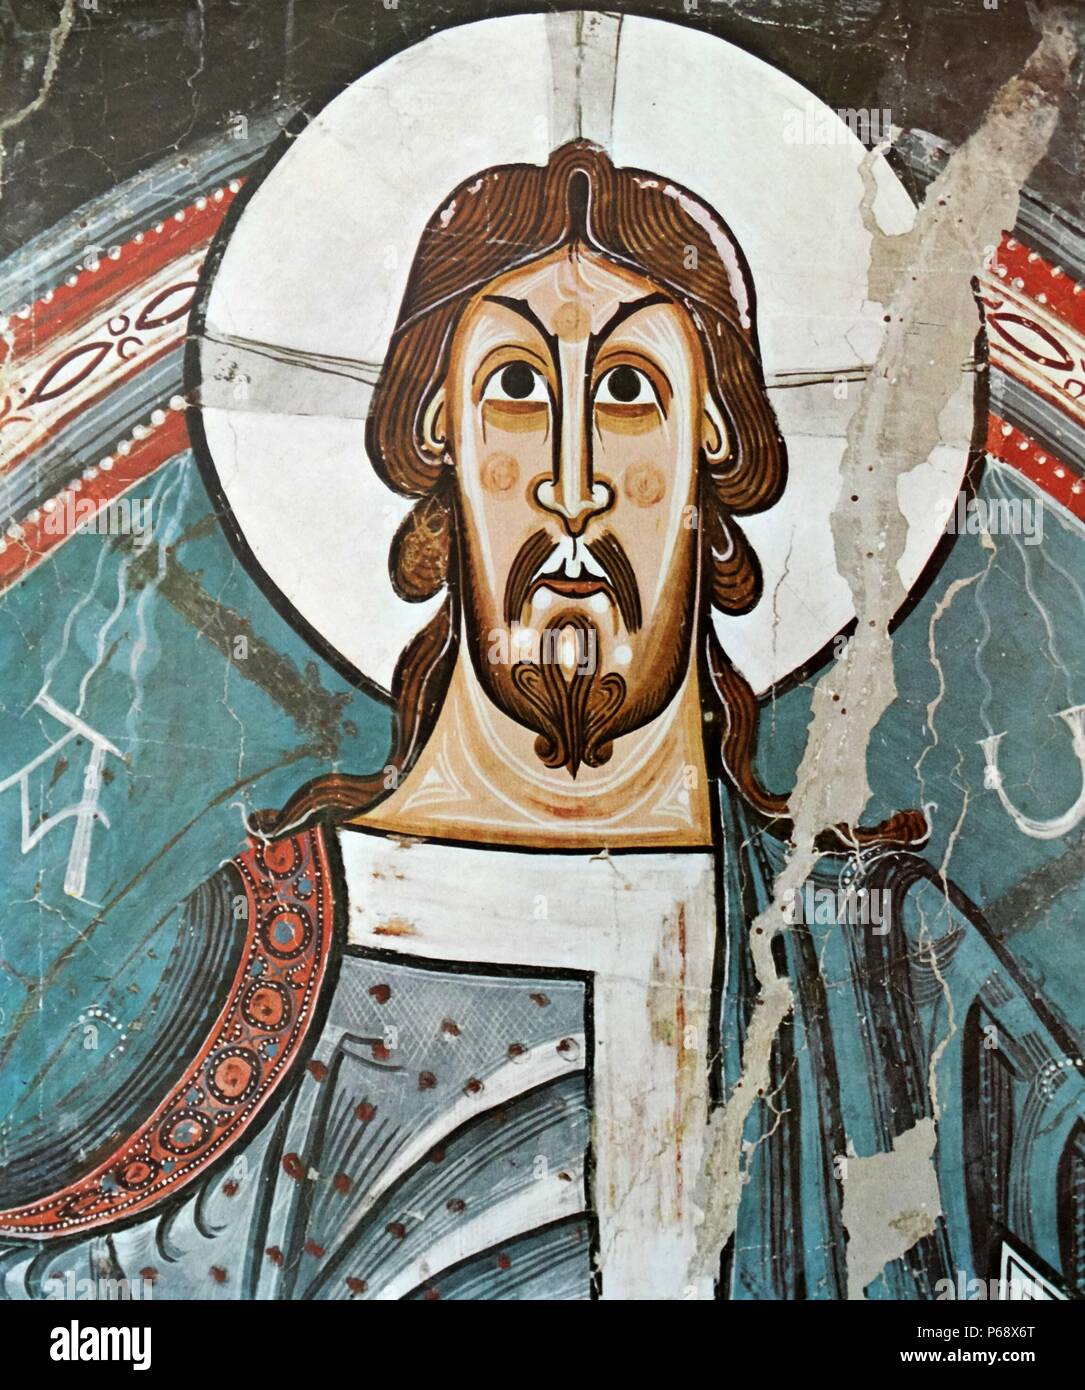 Romanische Fresken von St. Climent de Taull. Die Meister der Taull erstellt. Er war der größte Wandbild Maler des 12. Jahrhunderts in Katalonien und einer der bedeutendsten romanischen Maler in Europa betrachtet. Stockfoto